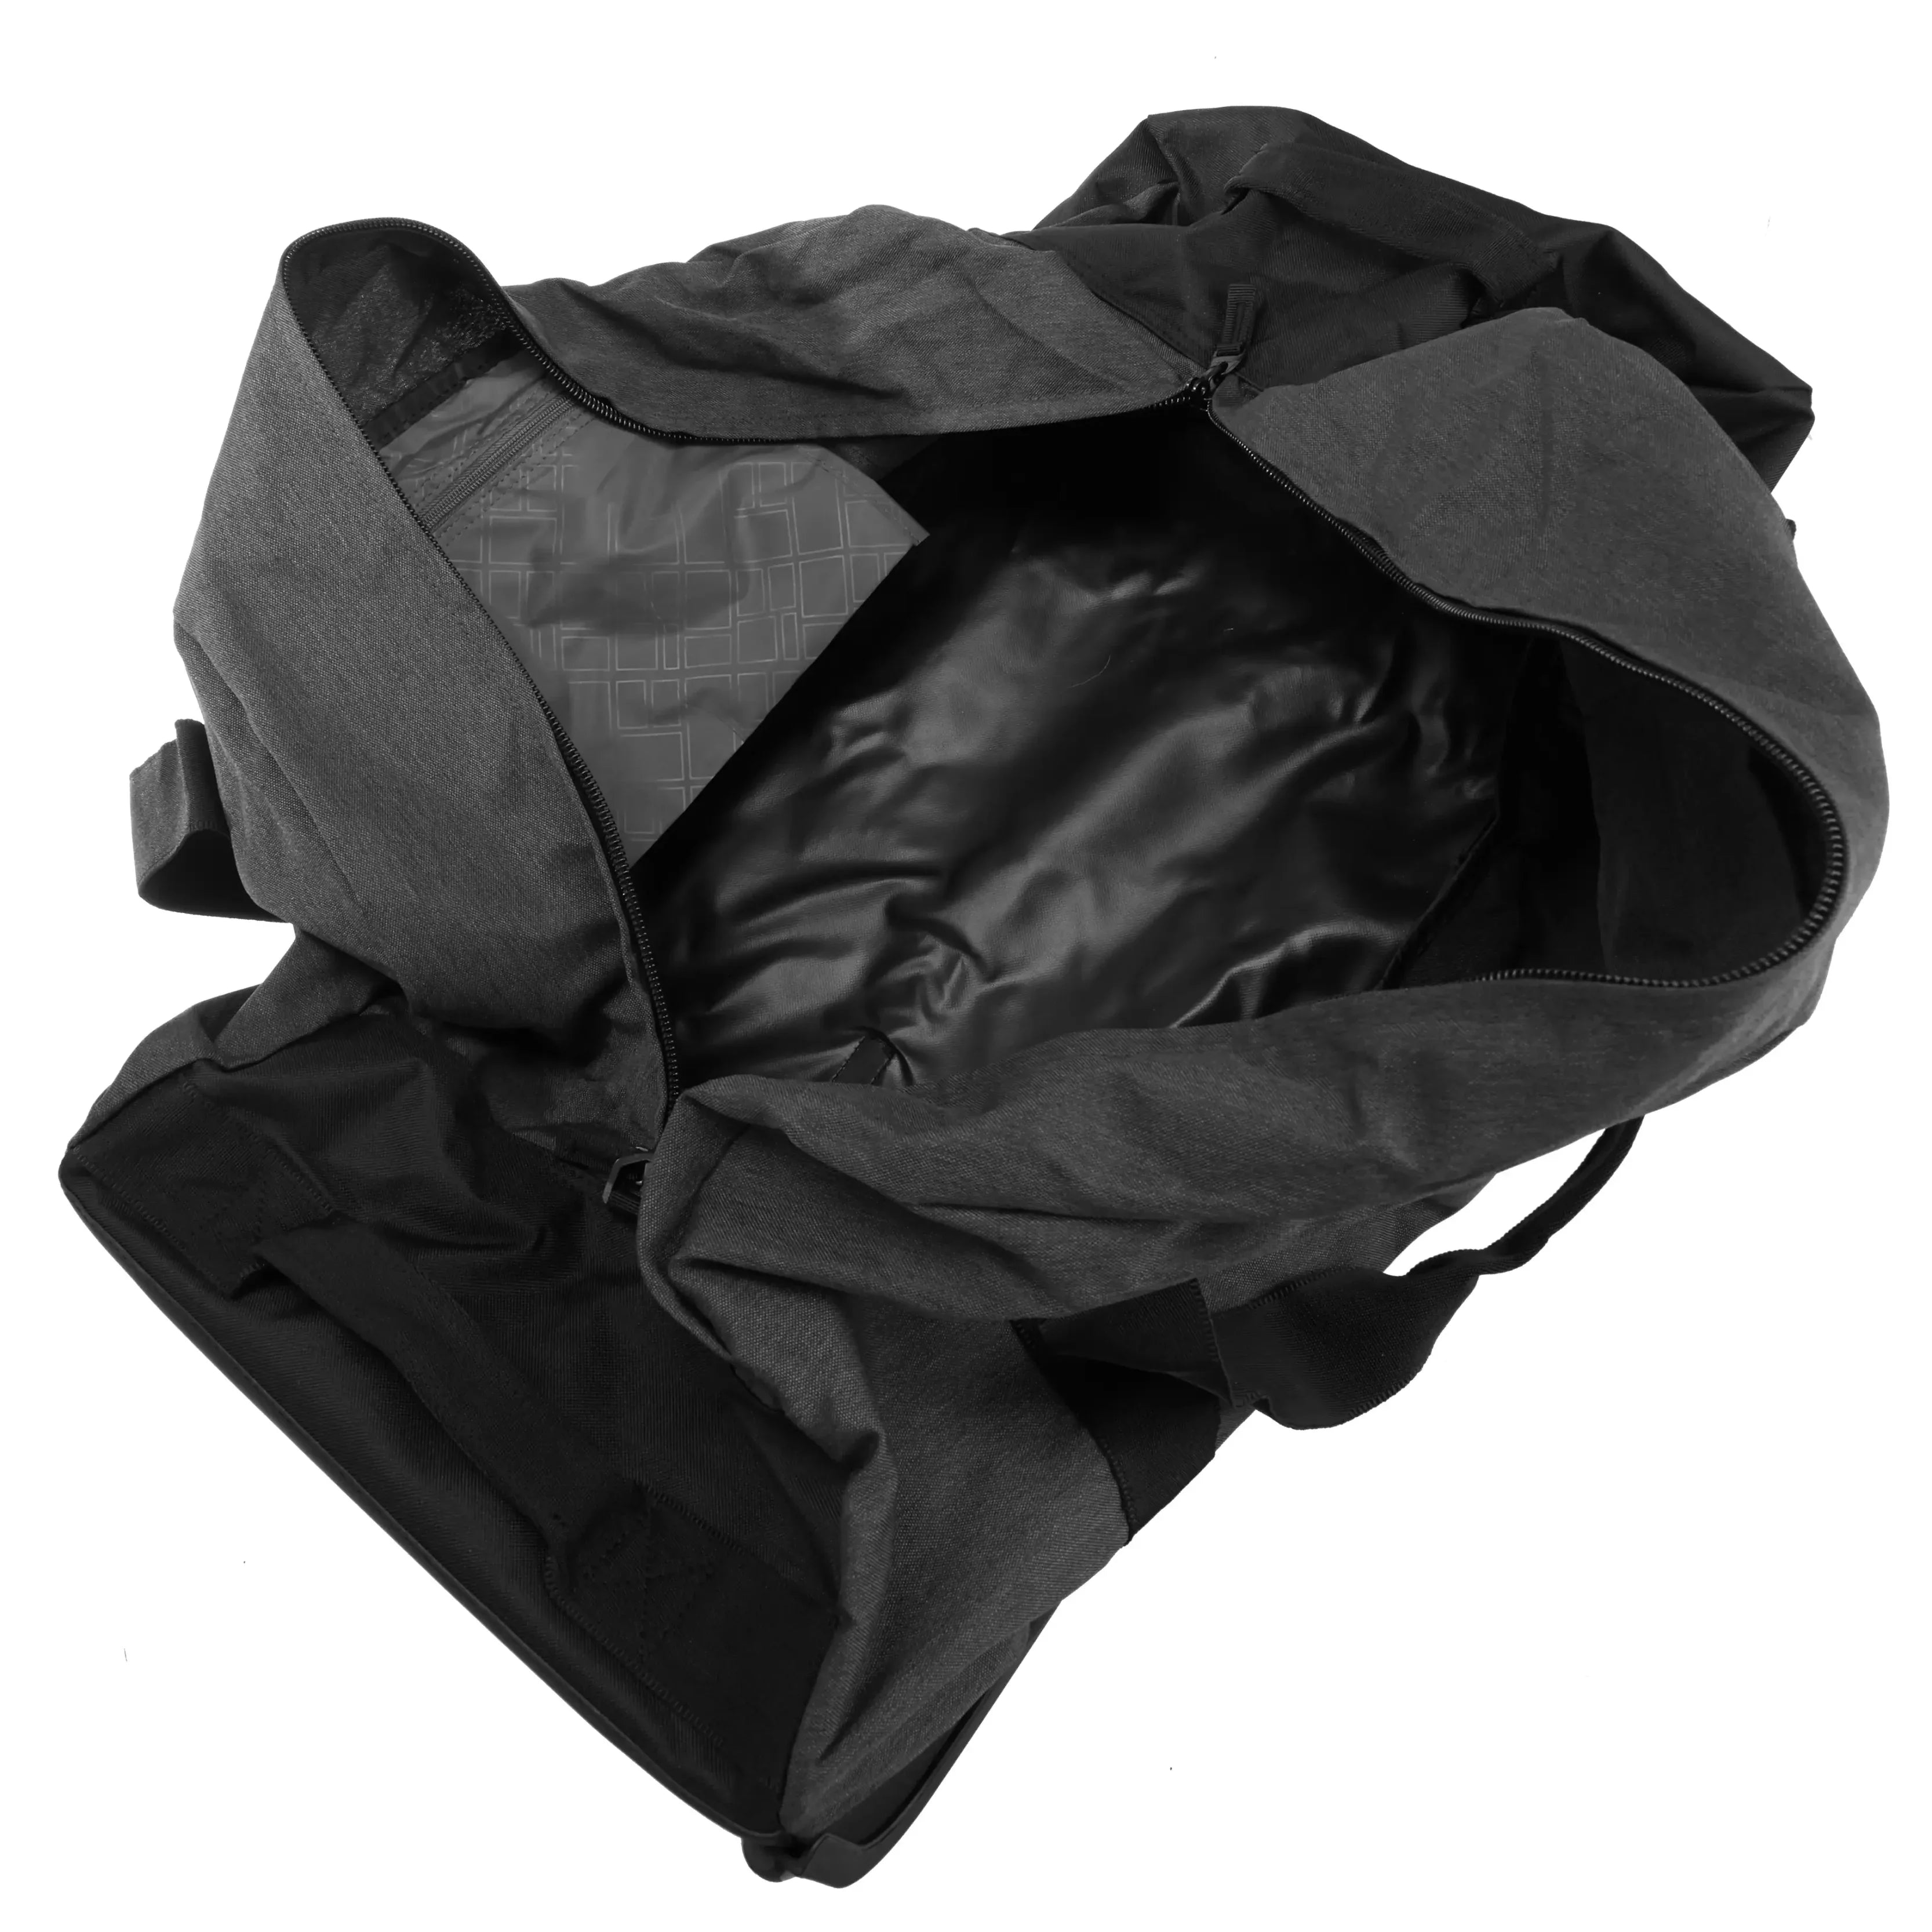 koffer-direkt.de Rolling travel bag L 72 cm - anthracite